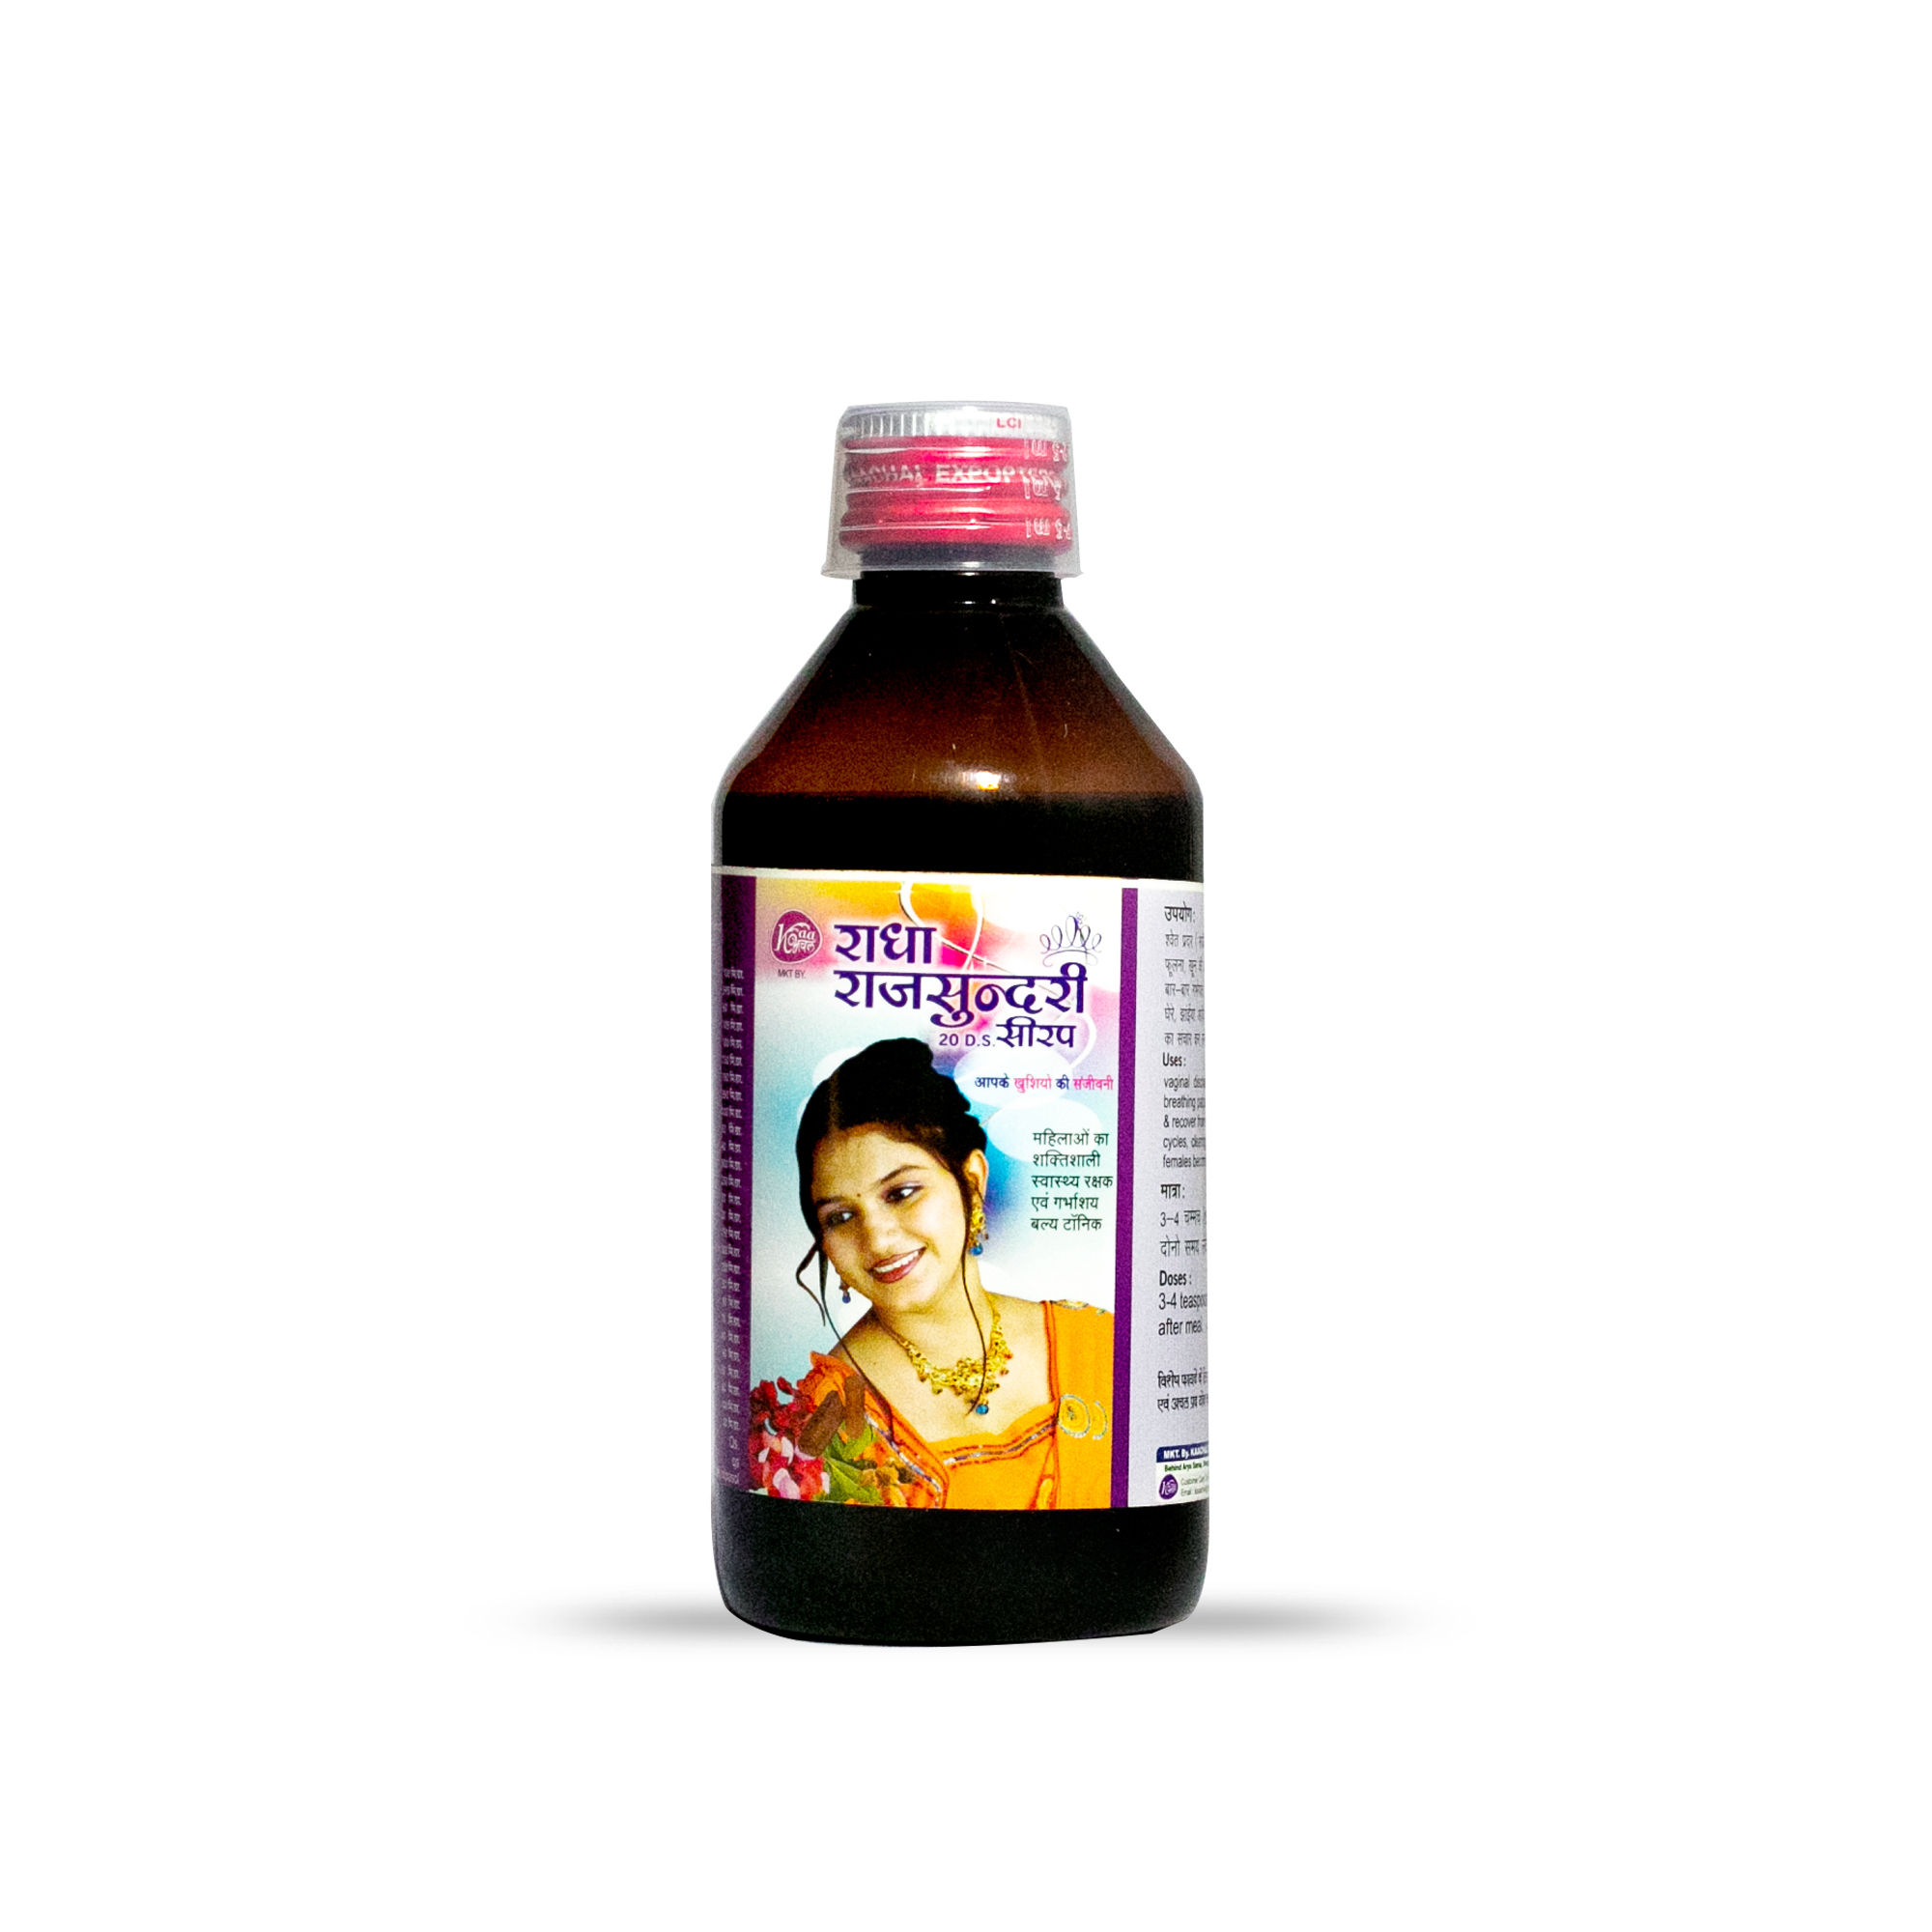 Radha Rajsundari Syrup